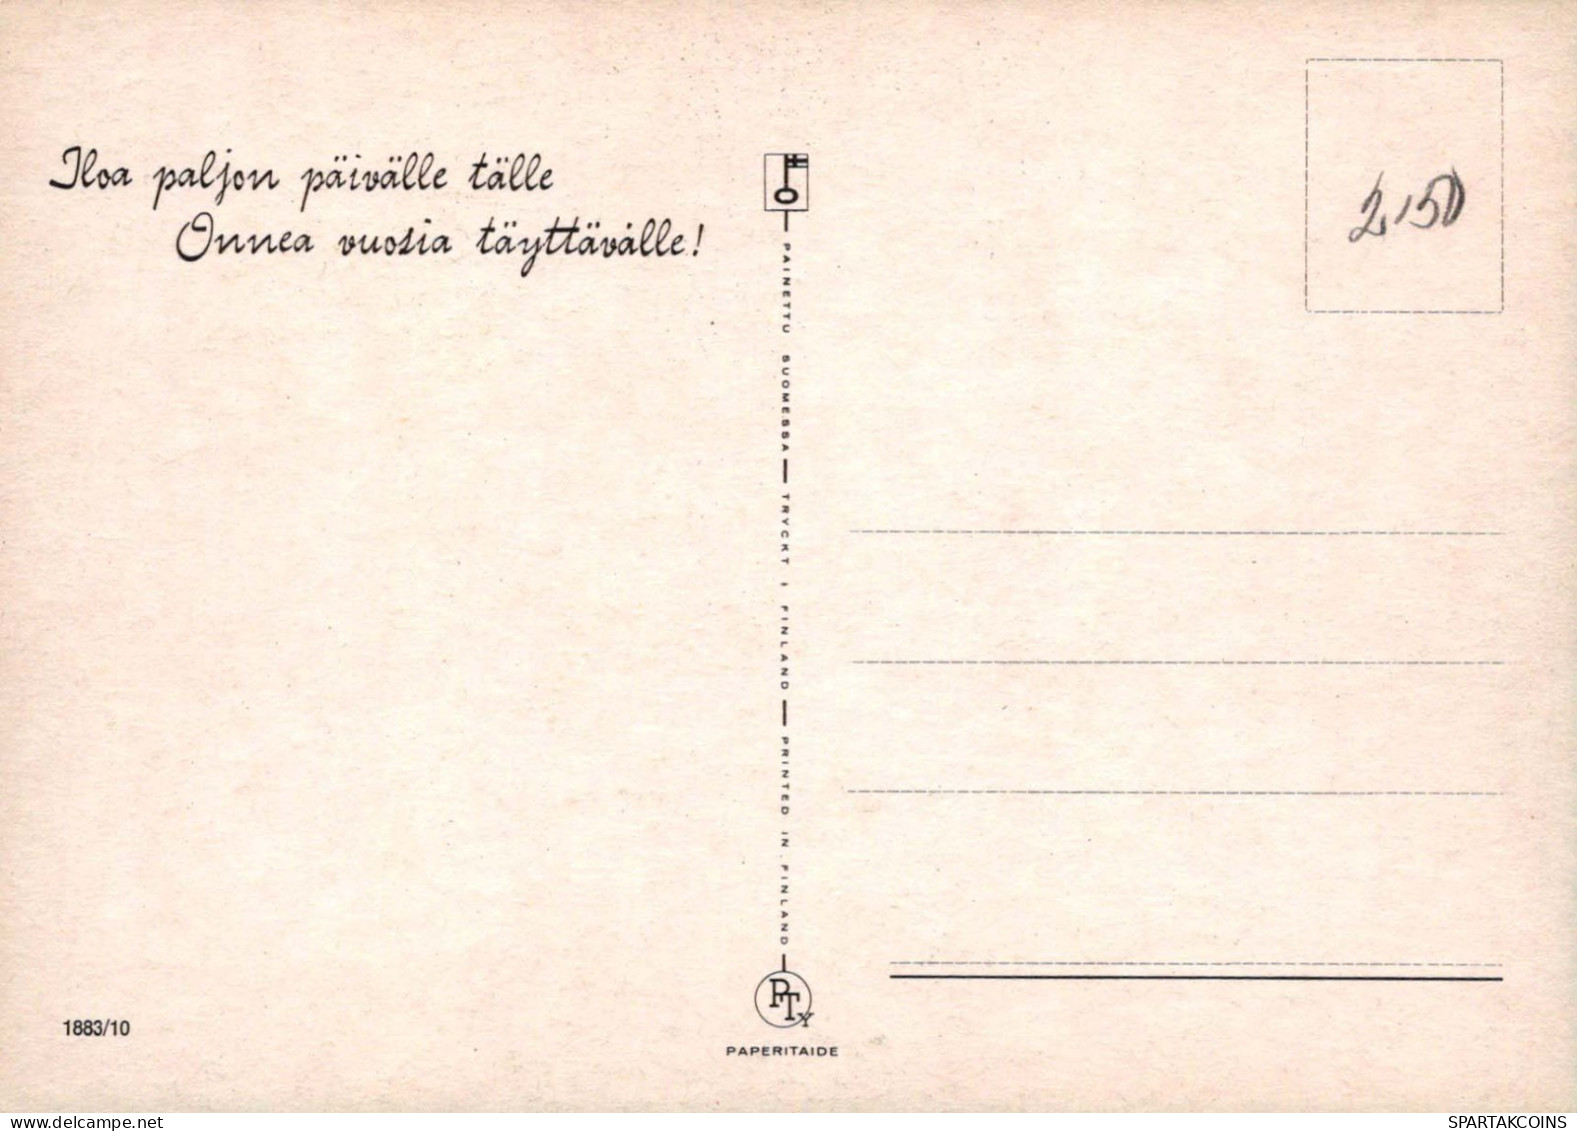 ALLES GUTE ZUM GEBURTSTAG 10 Jährige JUNGE KINDER Vintage Ansichtskarte Postkarte CPSM Unposted #PBU026.A - Birthday